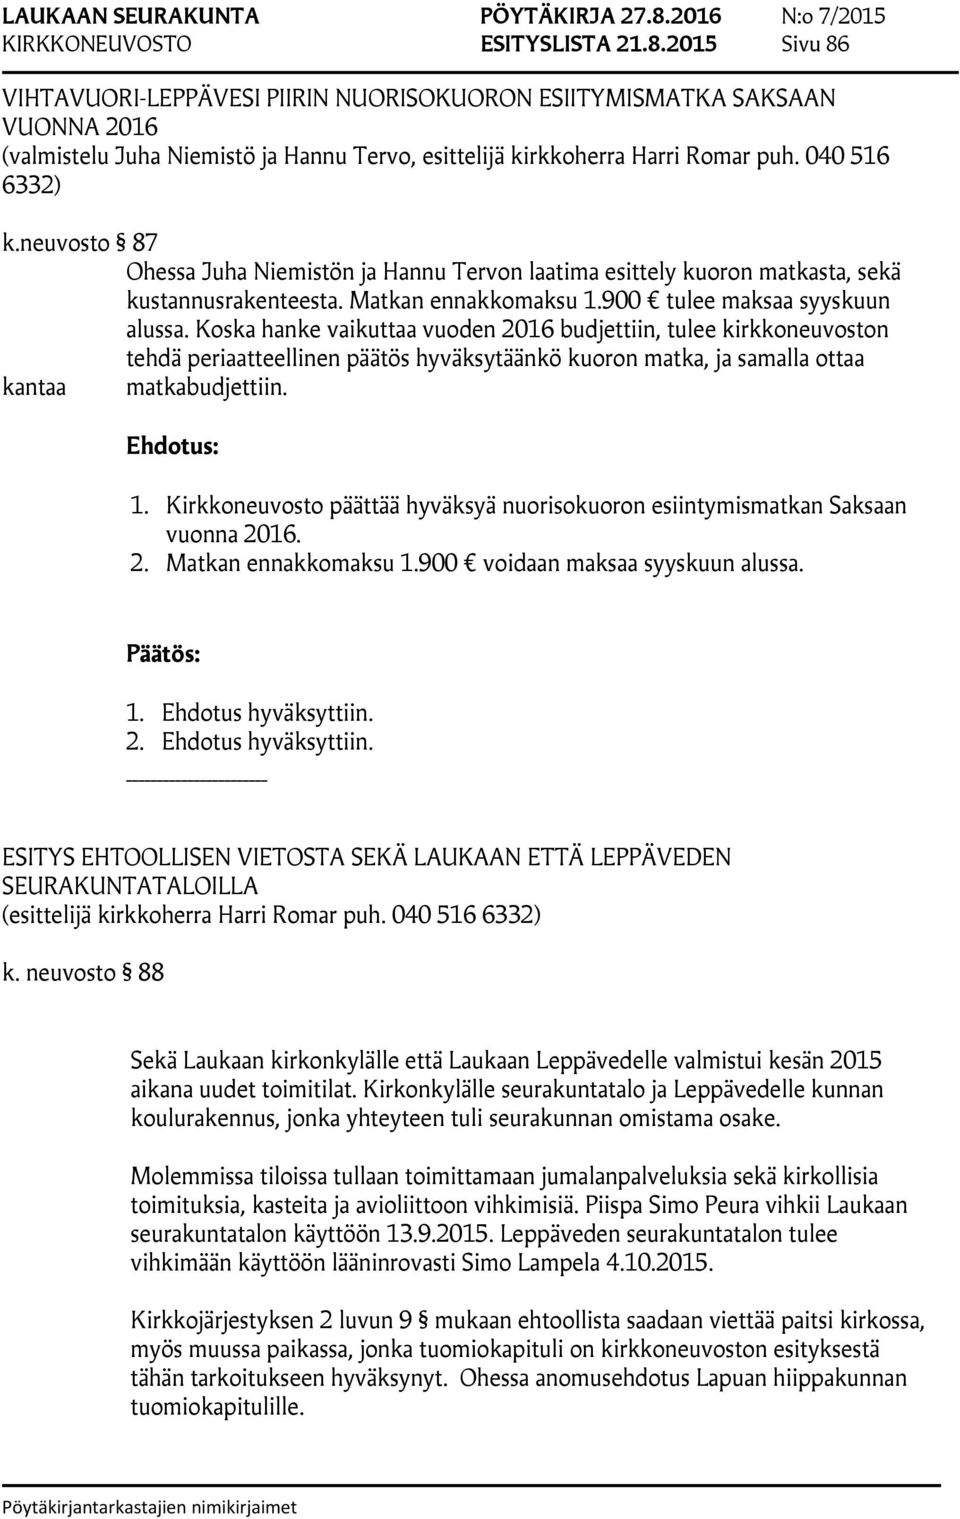 neuvosto 87 Ohessa Juha Niemistön ja Hannu Tervon laatima esittely kuoron matkasta, sekä kustannusrakenteesta. Matkan ennakkomaksu 1.900 tulee maksaa syyskuun alussa.